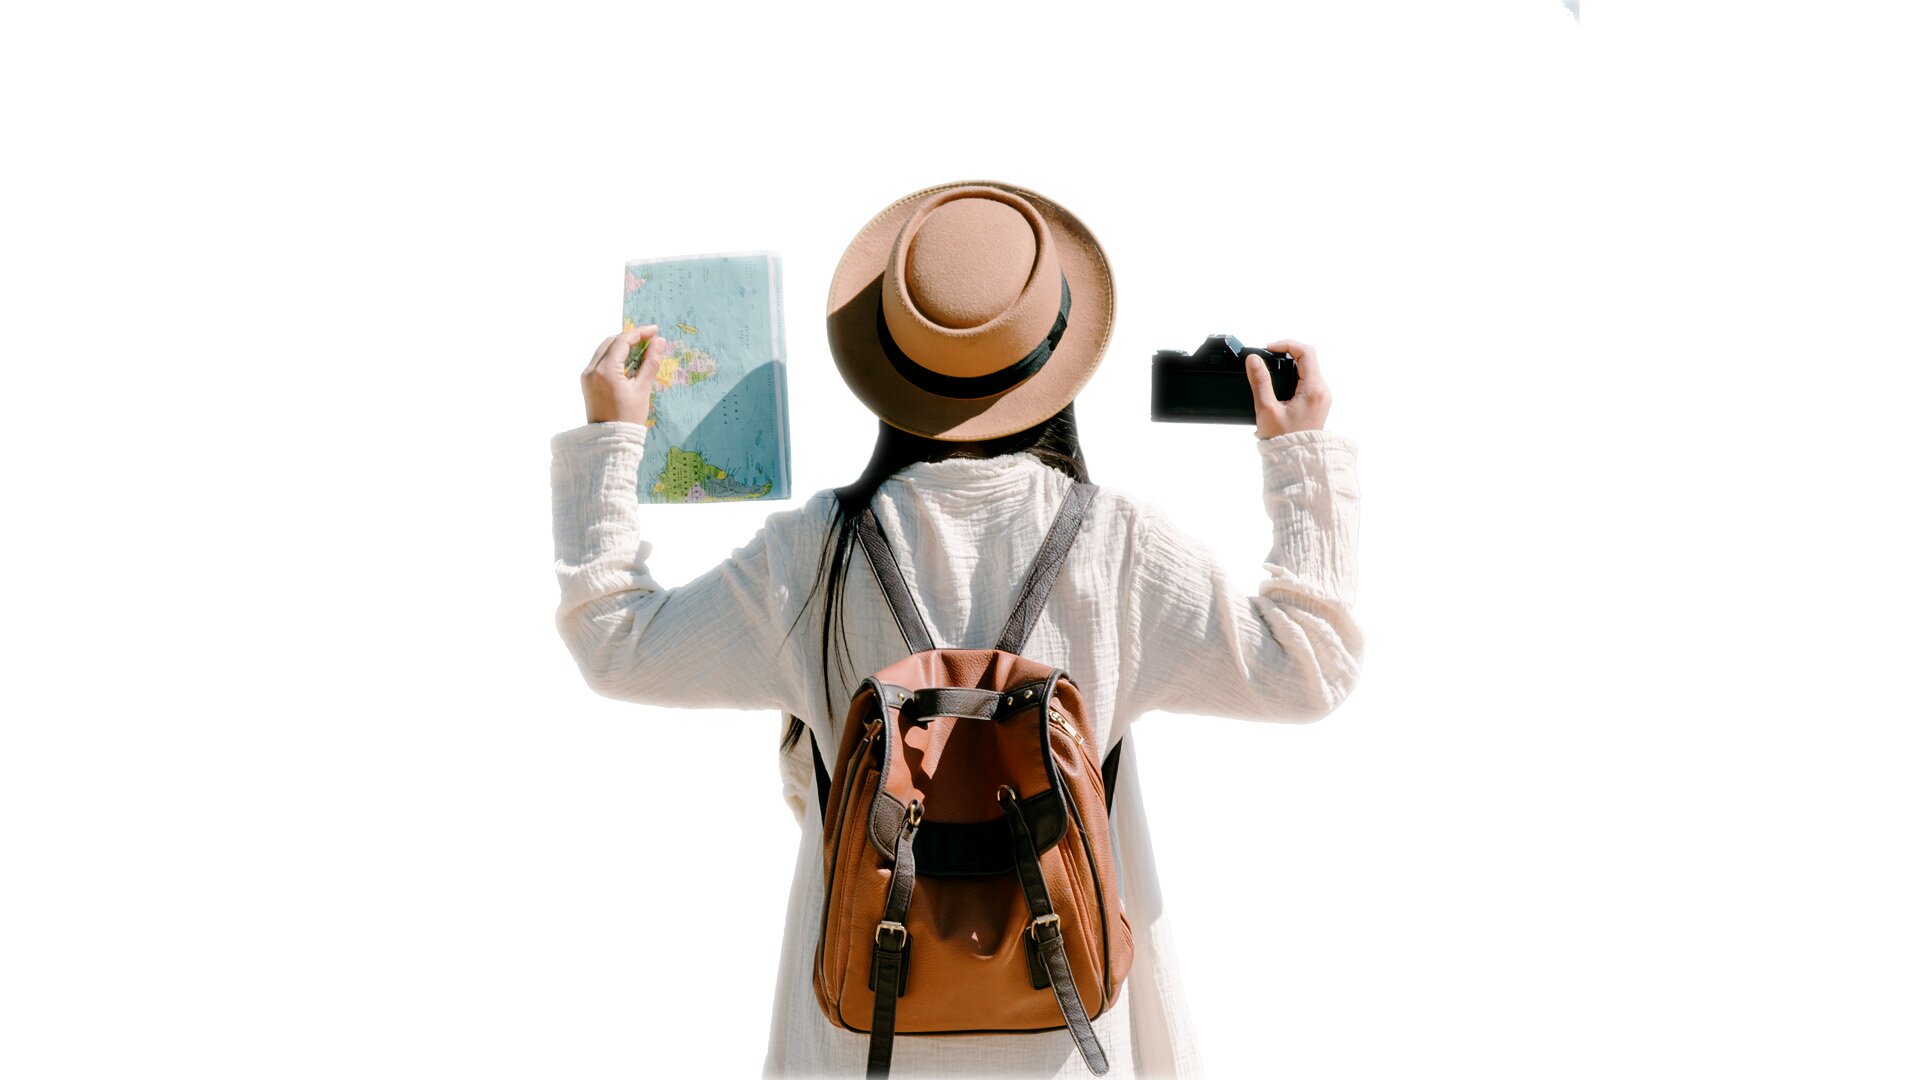 Na zdjęciu widać kobietę odwróconą plecami w białej bluzce, w kremowym kapeluszu i z żółtym plecakiem turystycznym na plecach. Ma uniesione ręce. W lewej trzyma mapę, a w prawej aparat fotograficzny.